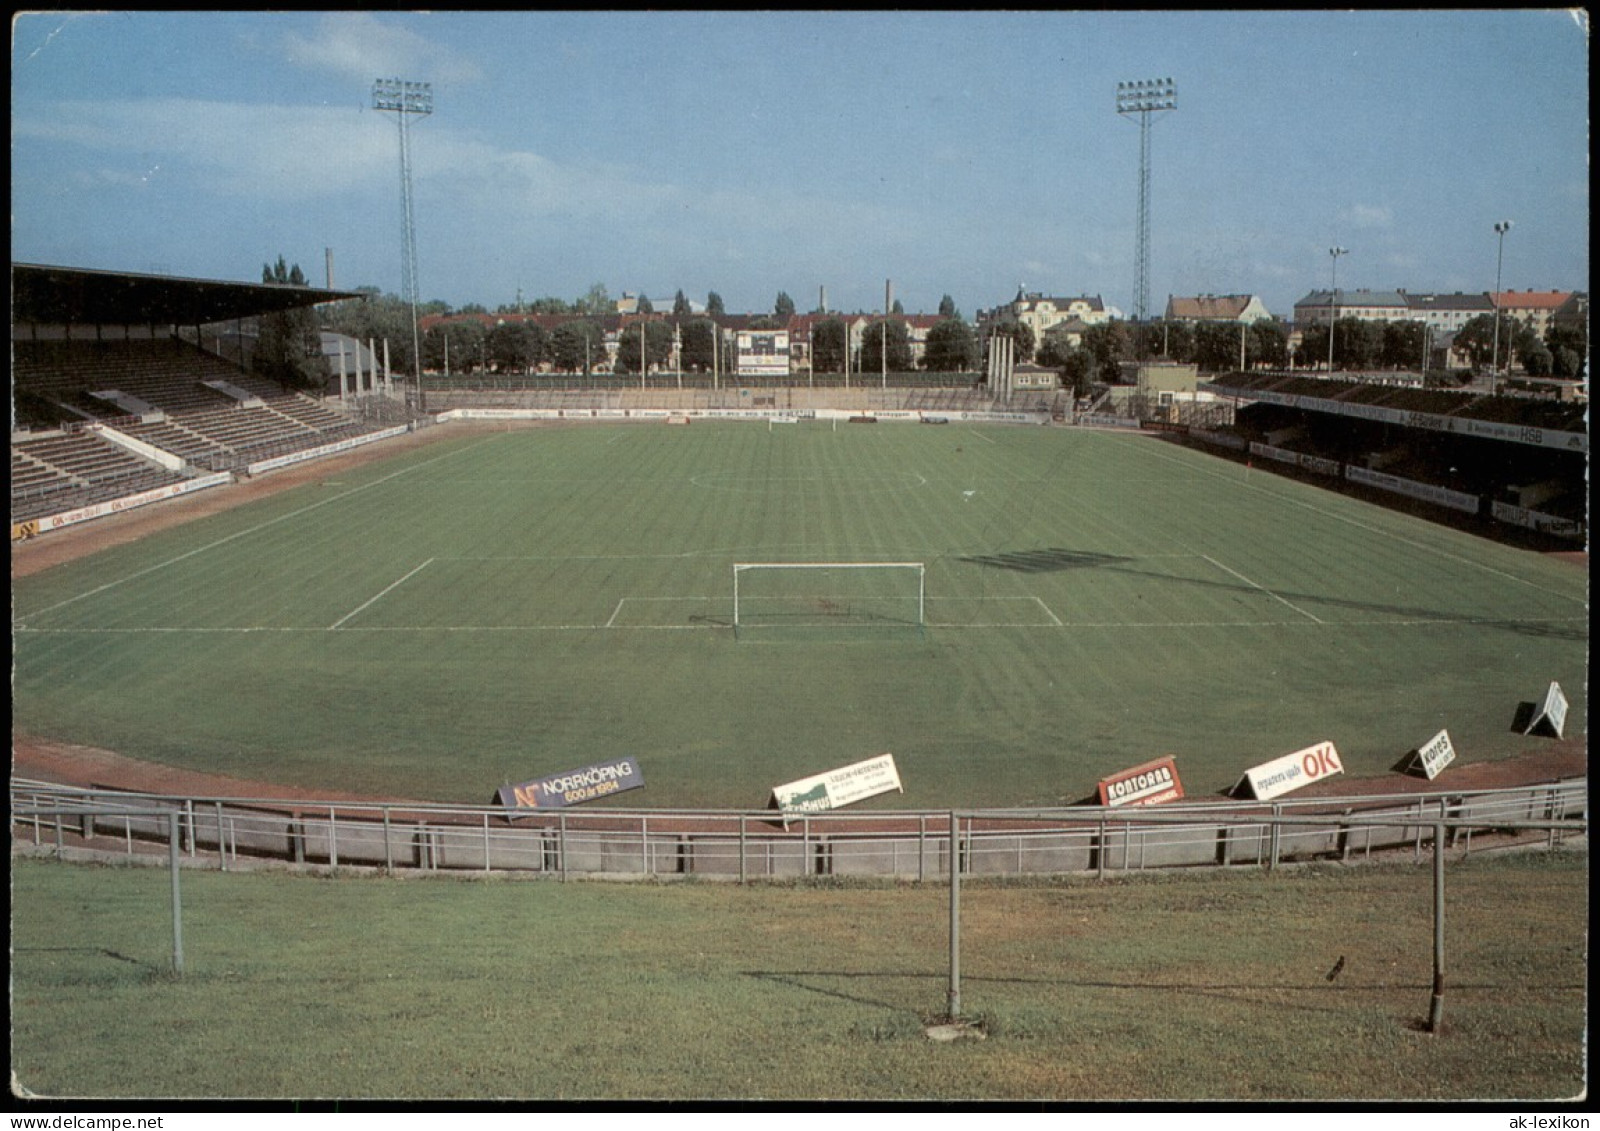 Norrköping Idrottsparken Stadion Fussball Football Soccer Stadium 1980 - Suecia